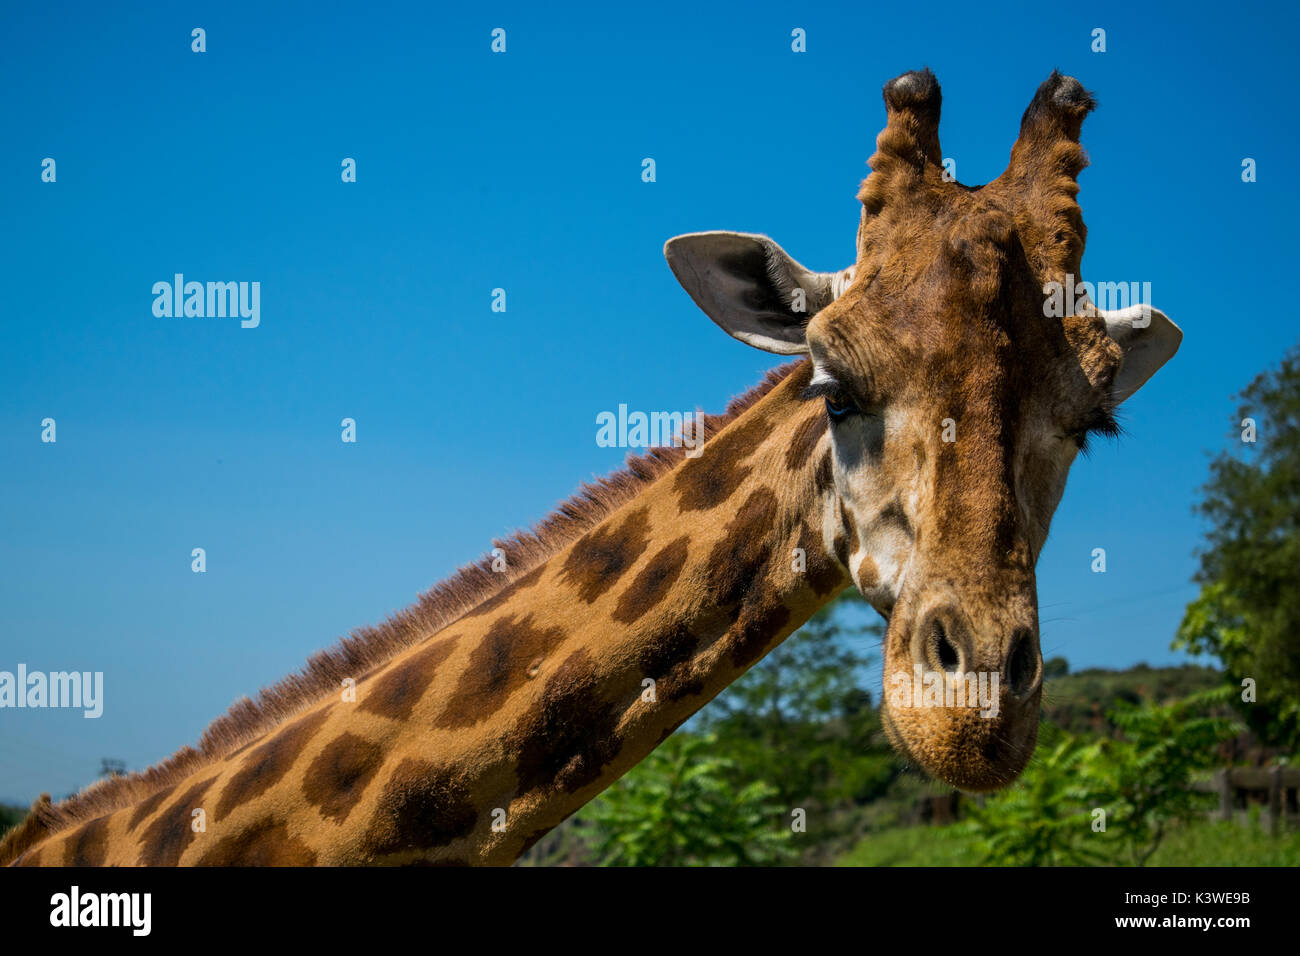 Animal (giraffe) foreground. Stock Photo